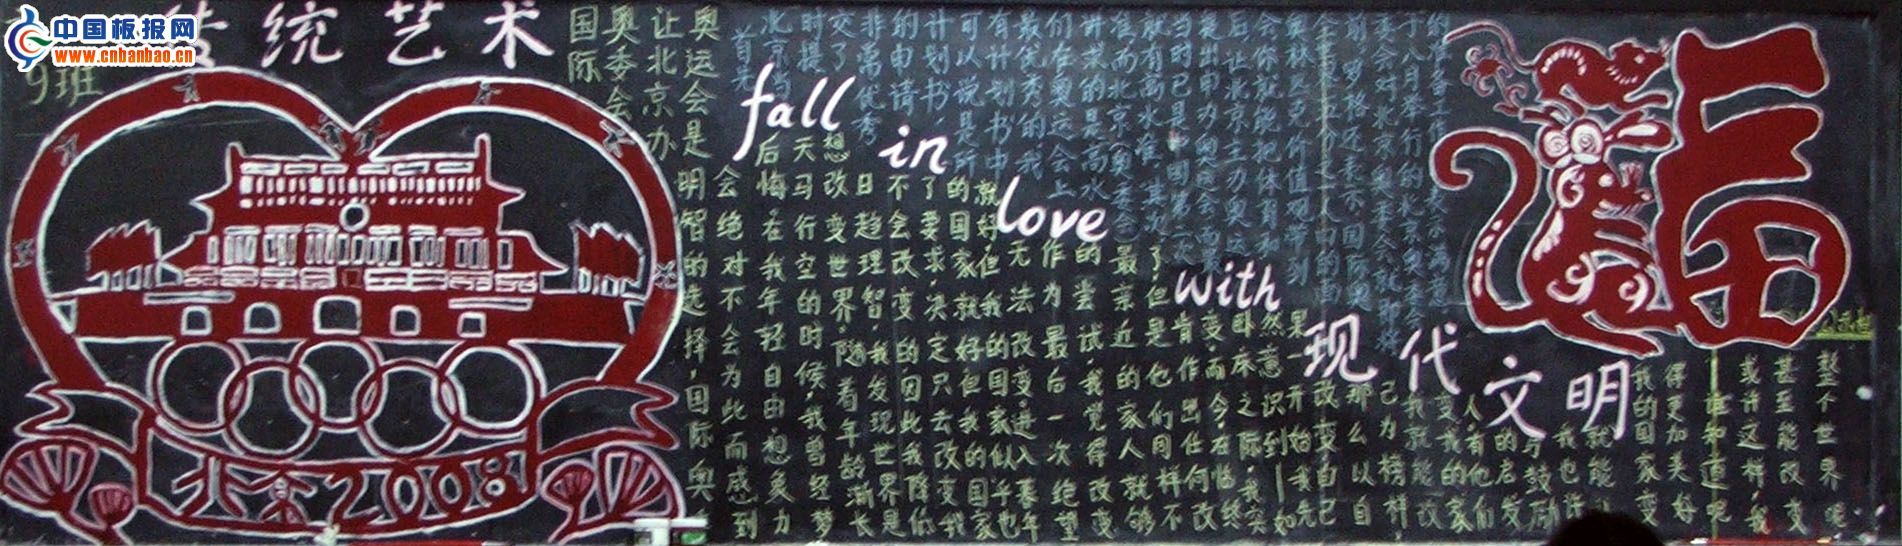 传统文化黑板报-传统艺术fall in love with 现代文明